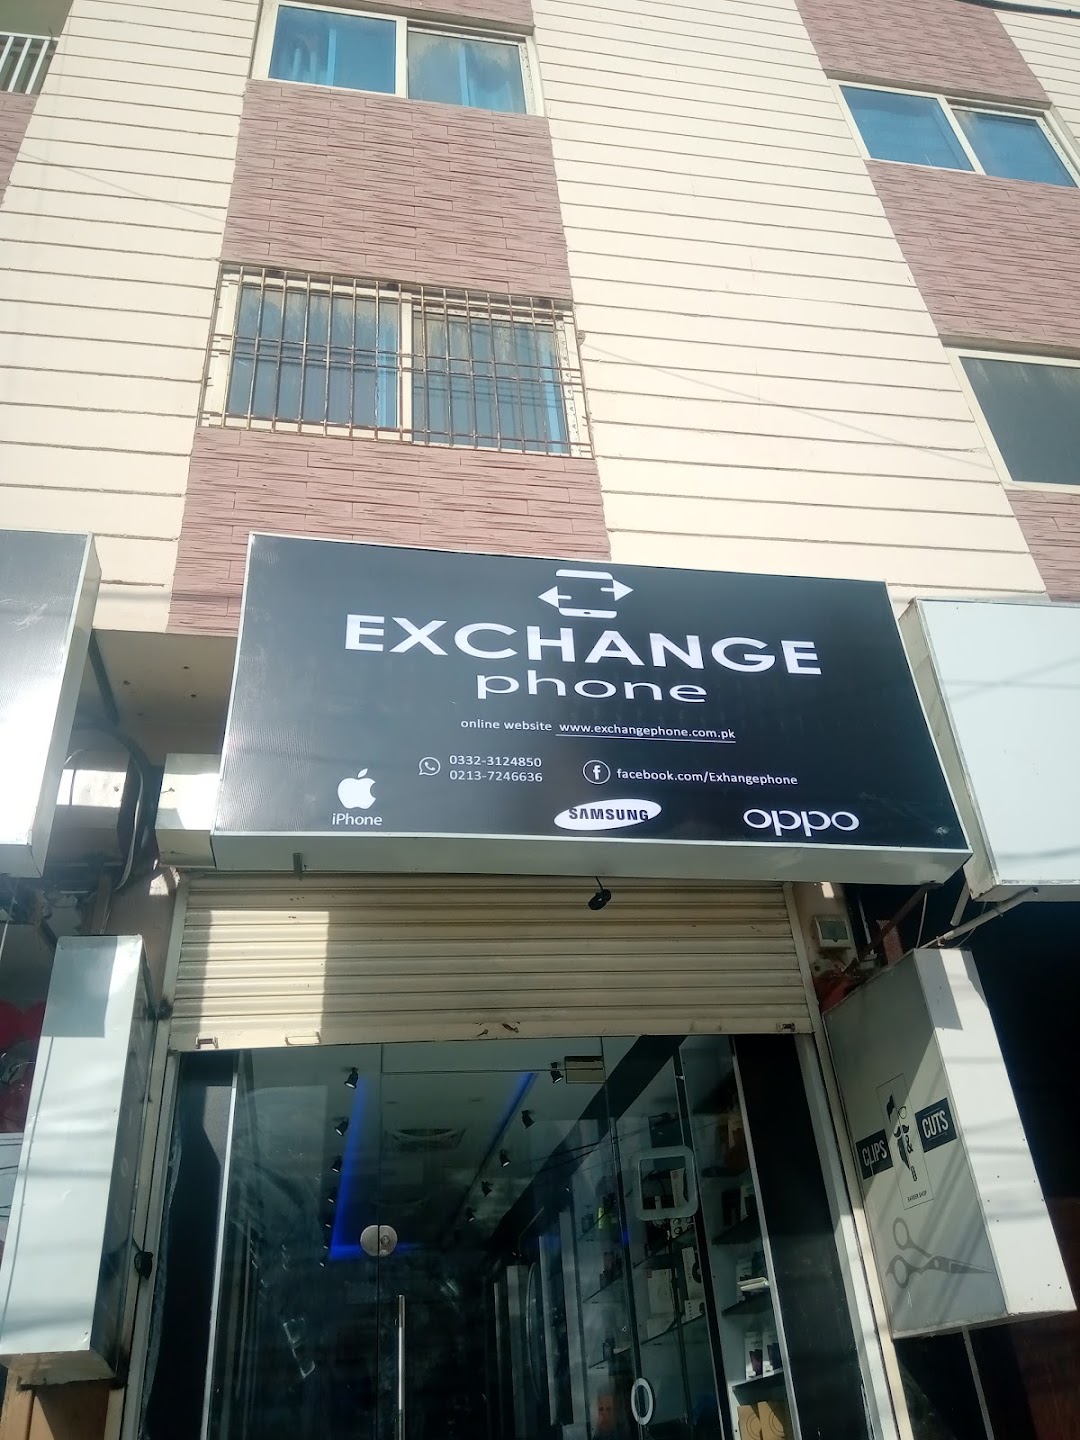 Exchangephone.com.pk